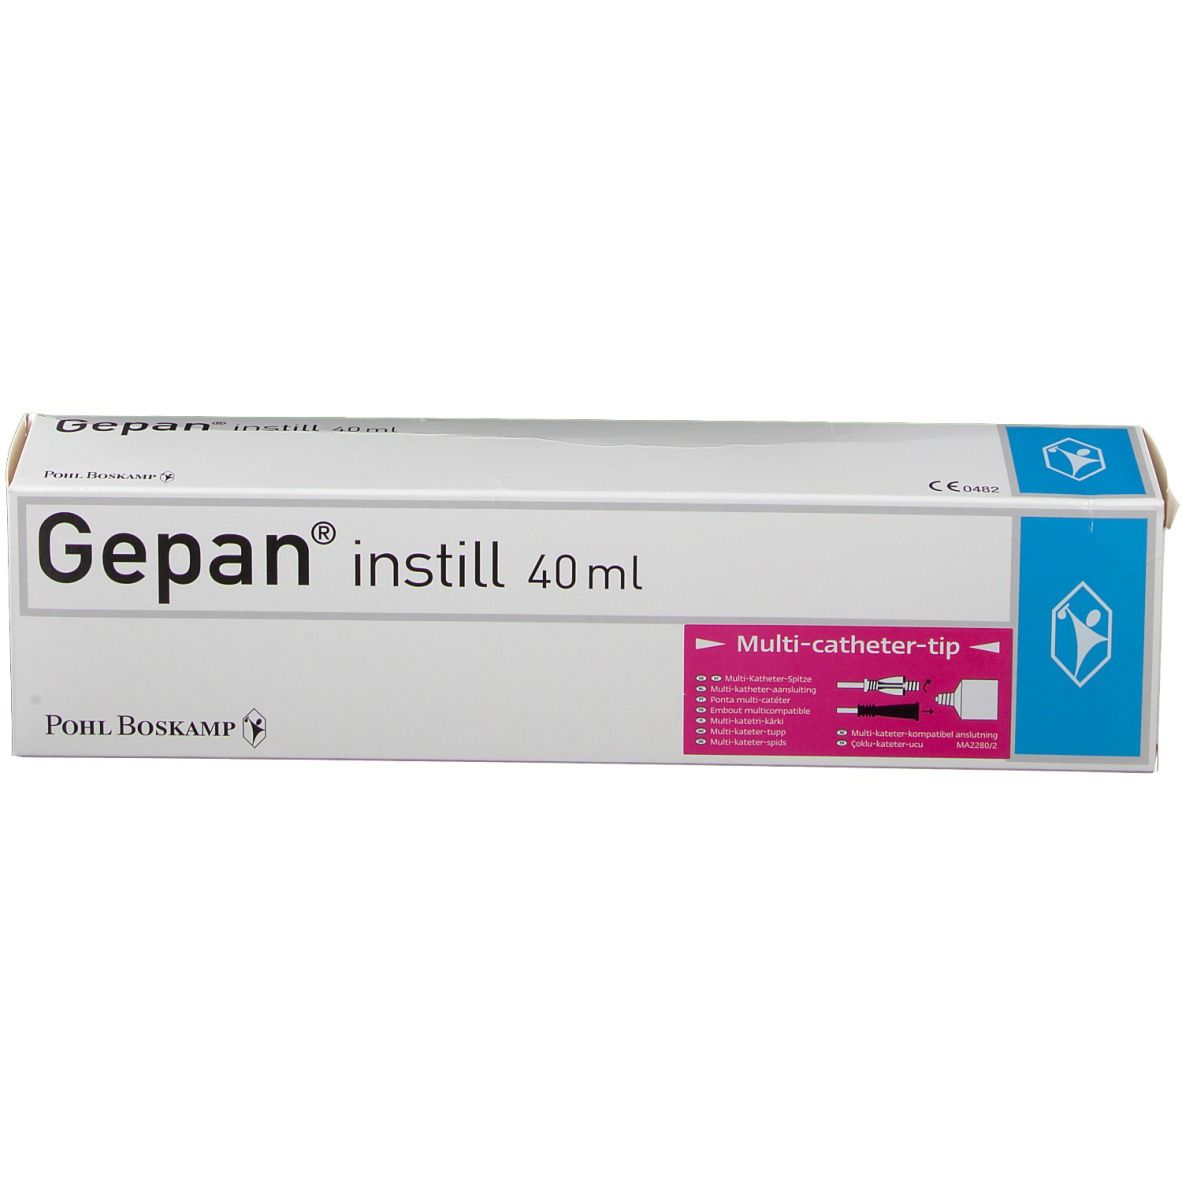 Gepan® instill